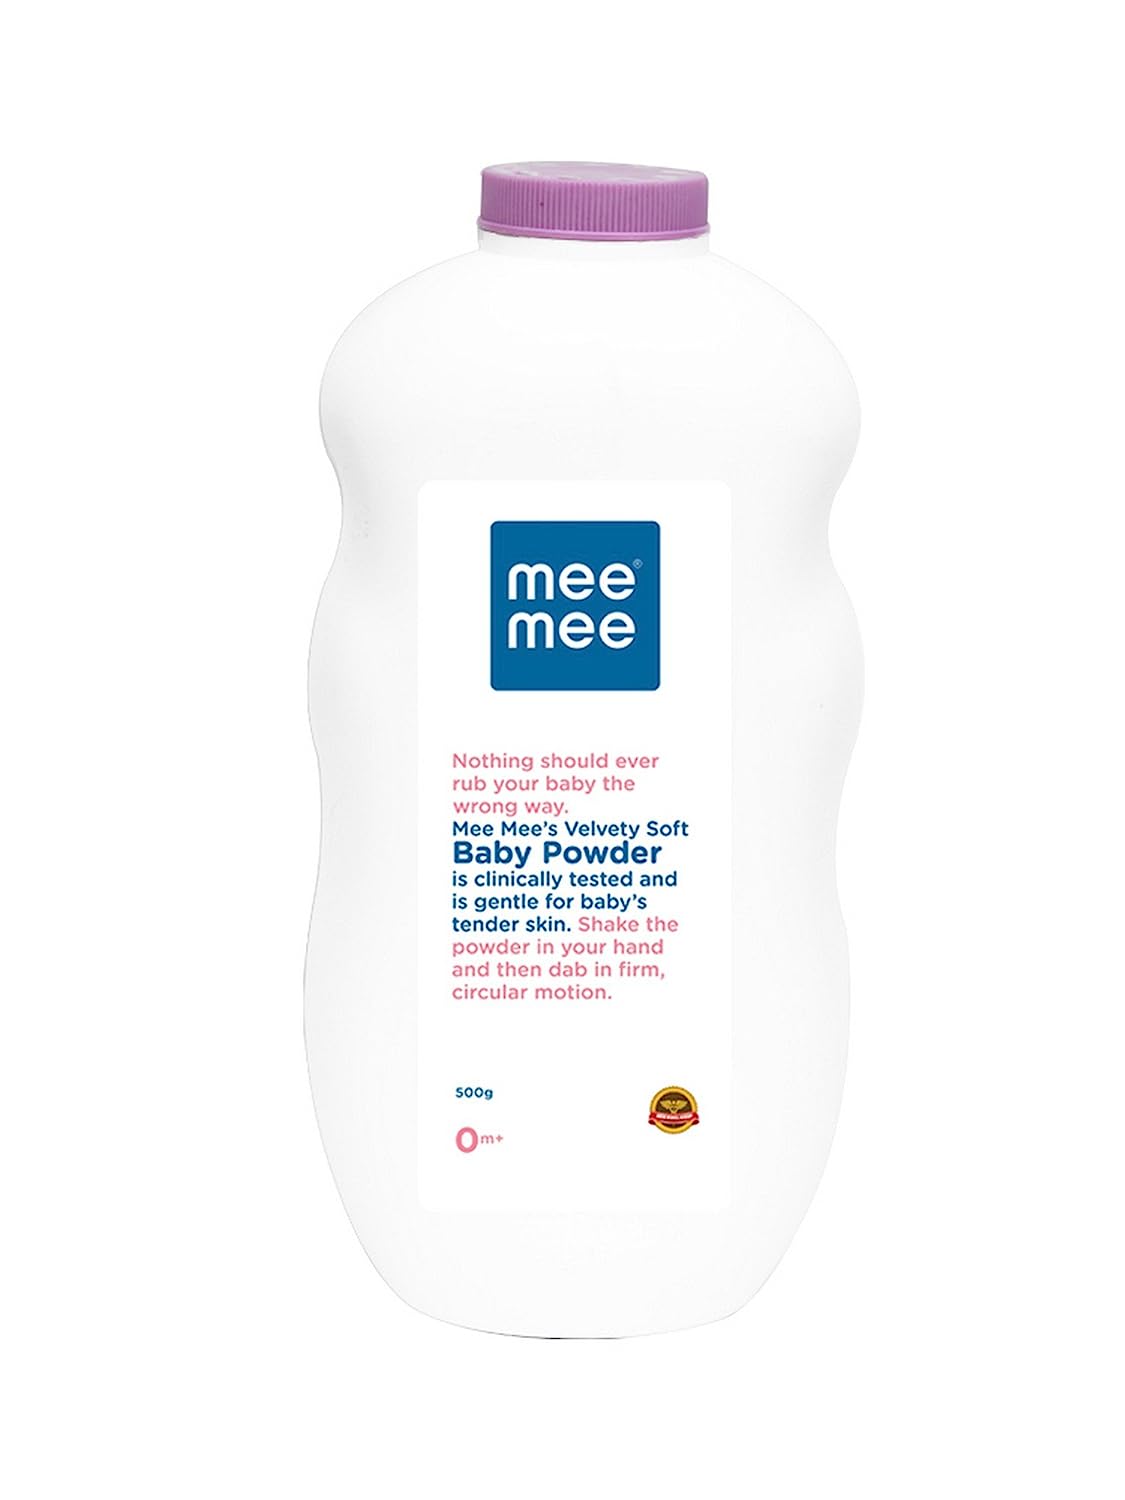 Mee Mee Baby Powder - Pack of 2 (500g + 500g) Fresh Feel